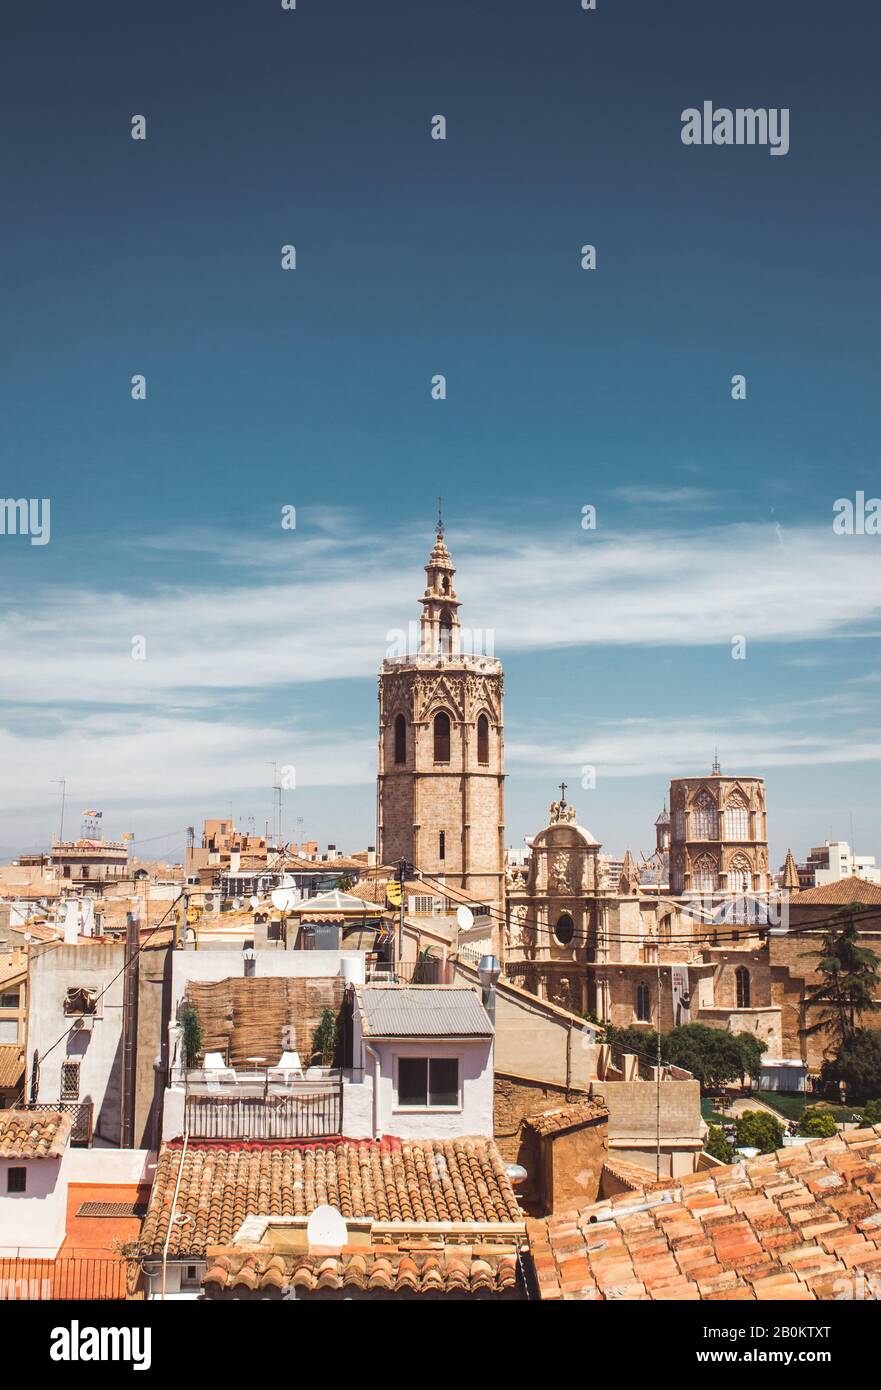 Photo de stock d'une belle vue de Torre del Micalet. Cathédrale gothique du XIIIe siècle à Valence, Espagne Banque D'Images